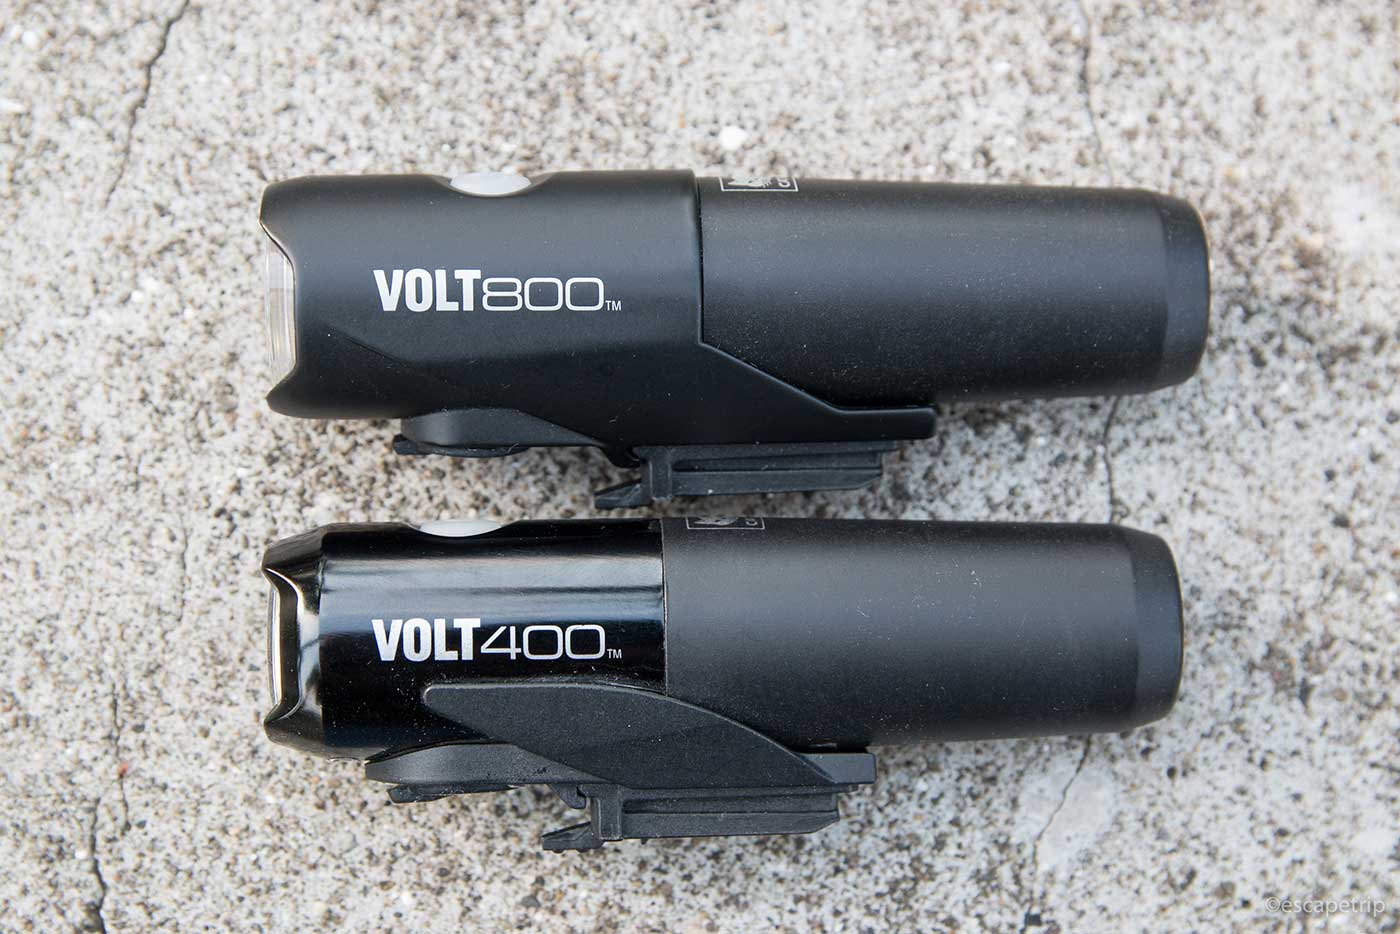 キャットアイ「VOLT800」と「VOLT400」の比較。用途に応じたライトを選ぼう